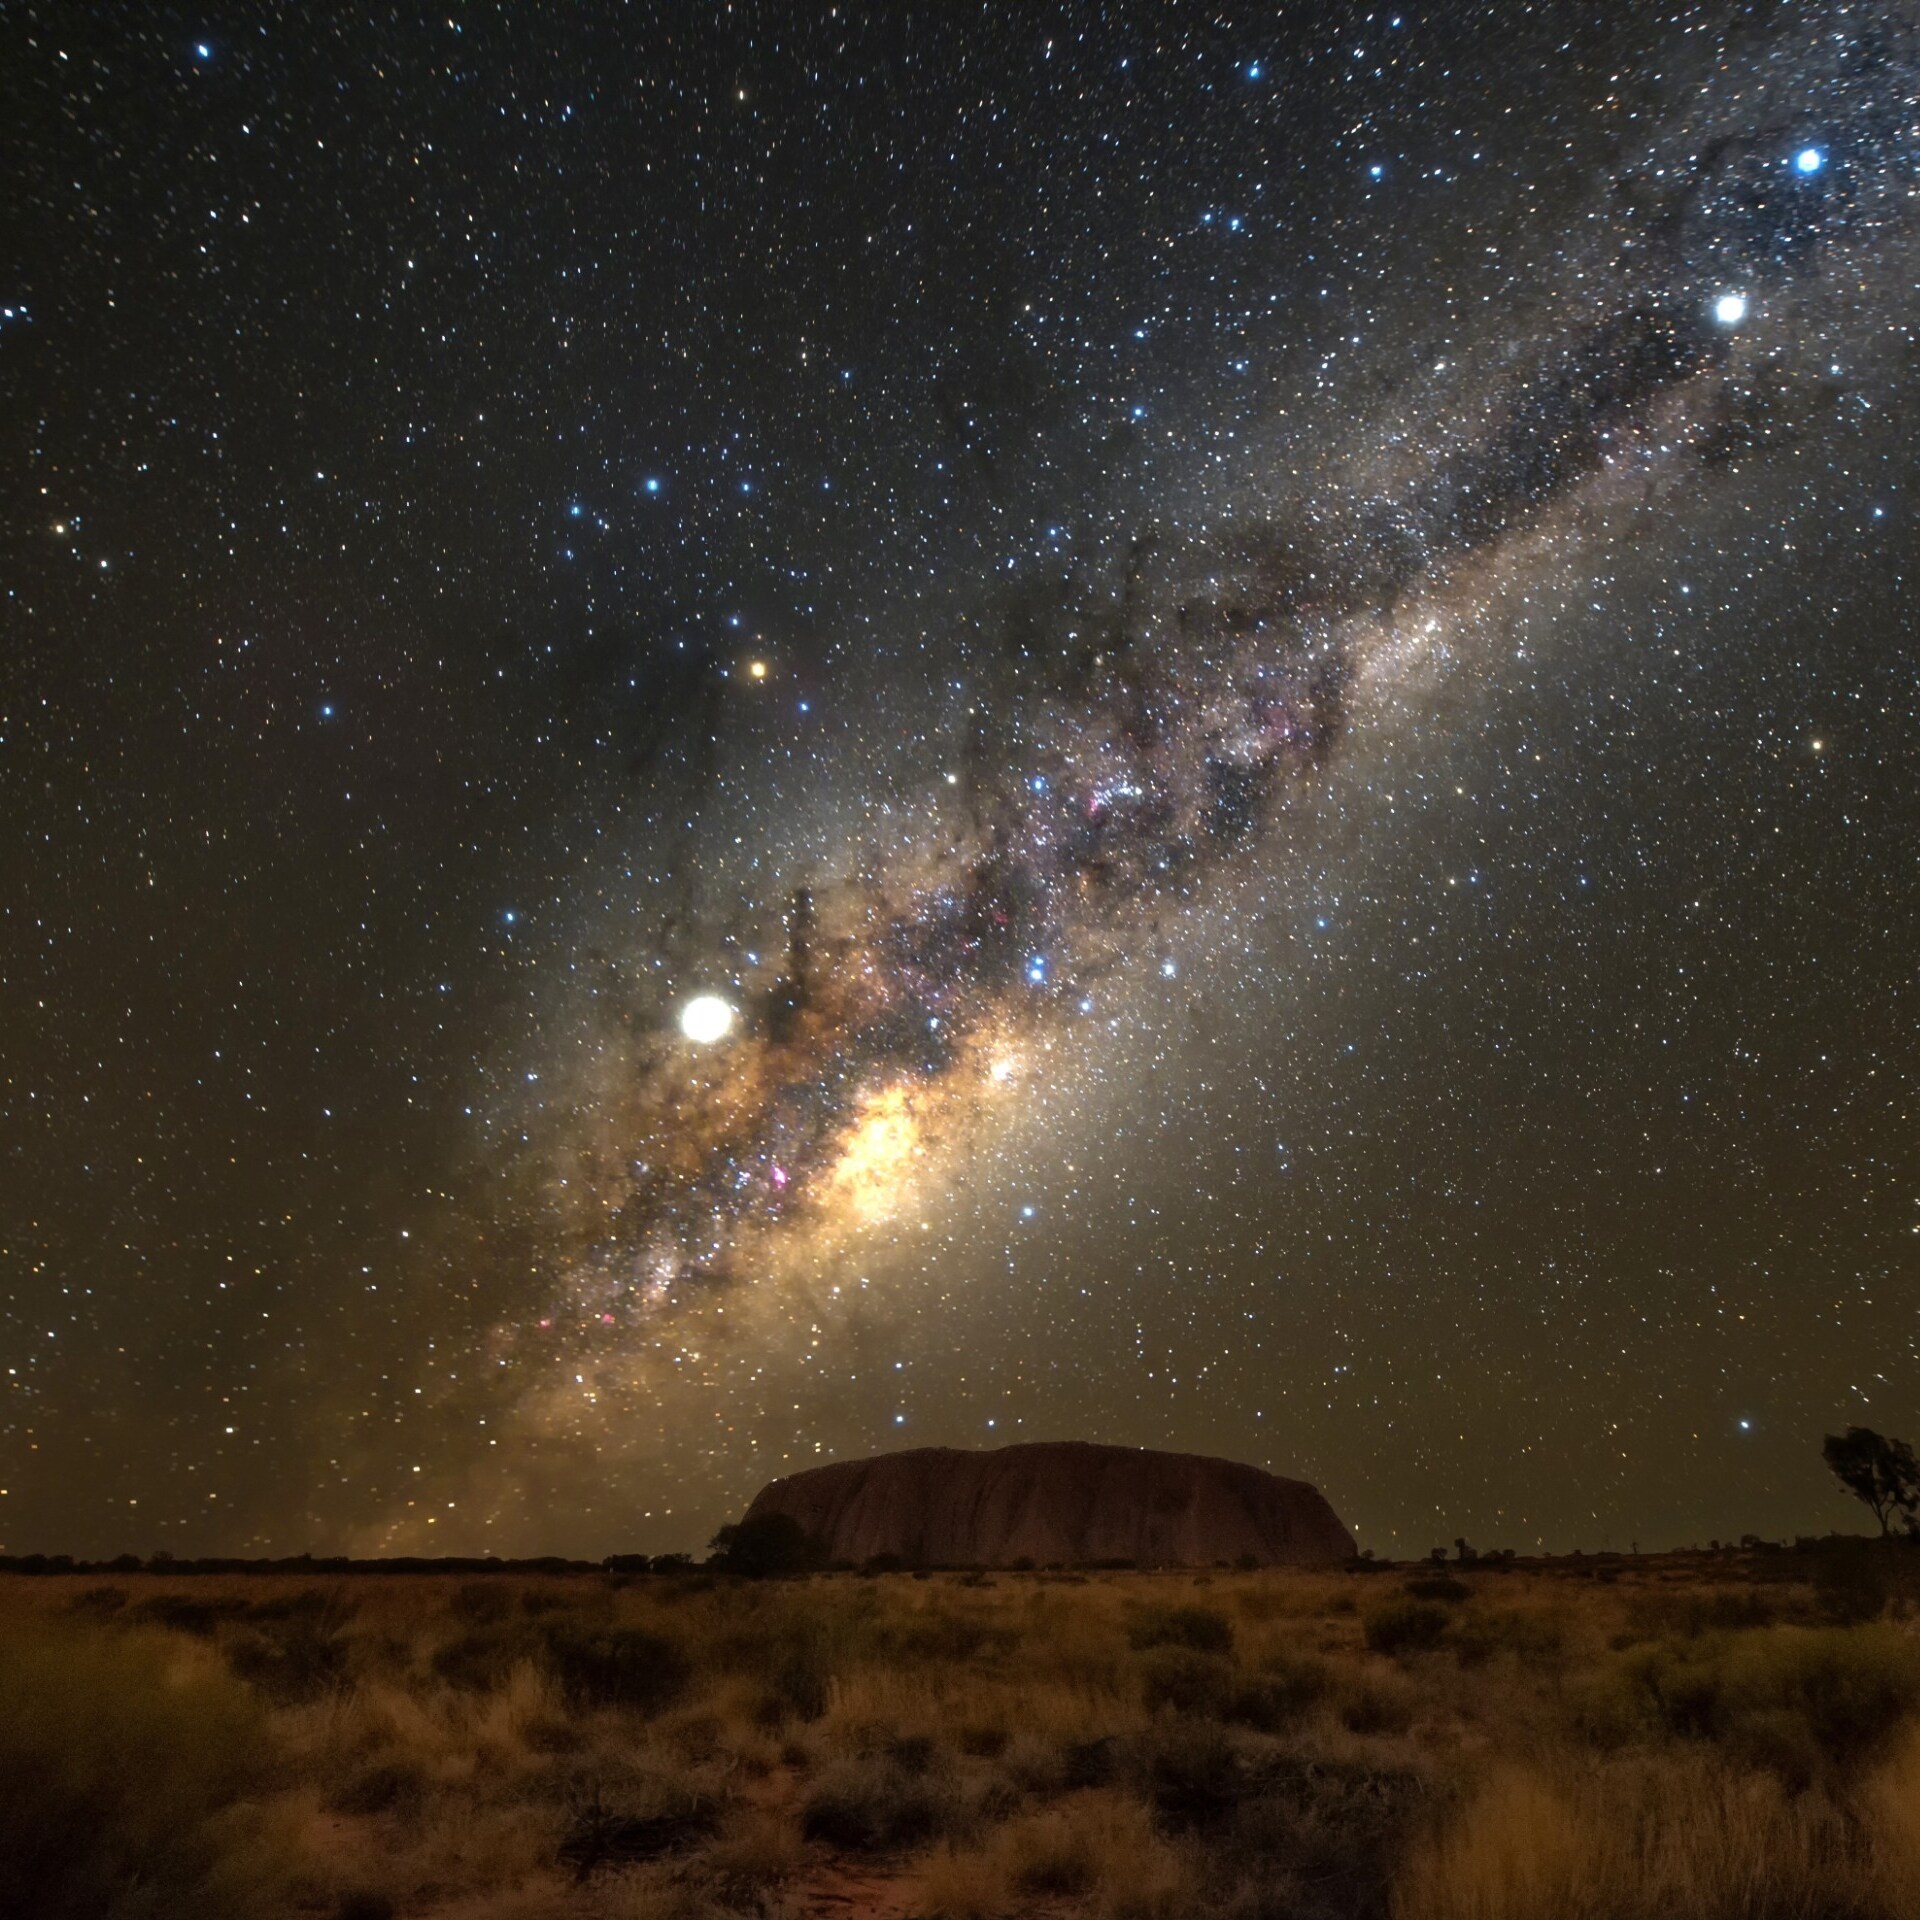 Uluru sous le ciel nocturne © Tourism NT/Georgios Skoufezis 2019